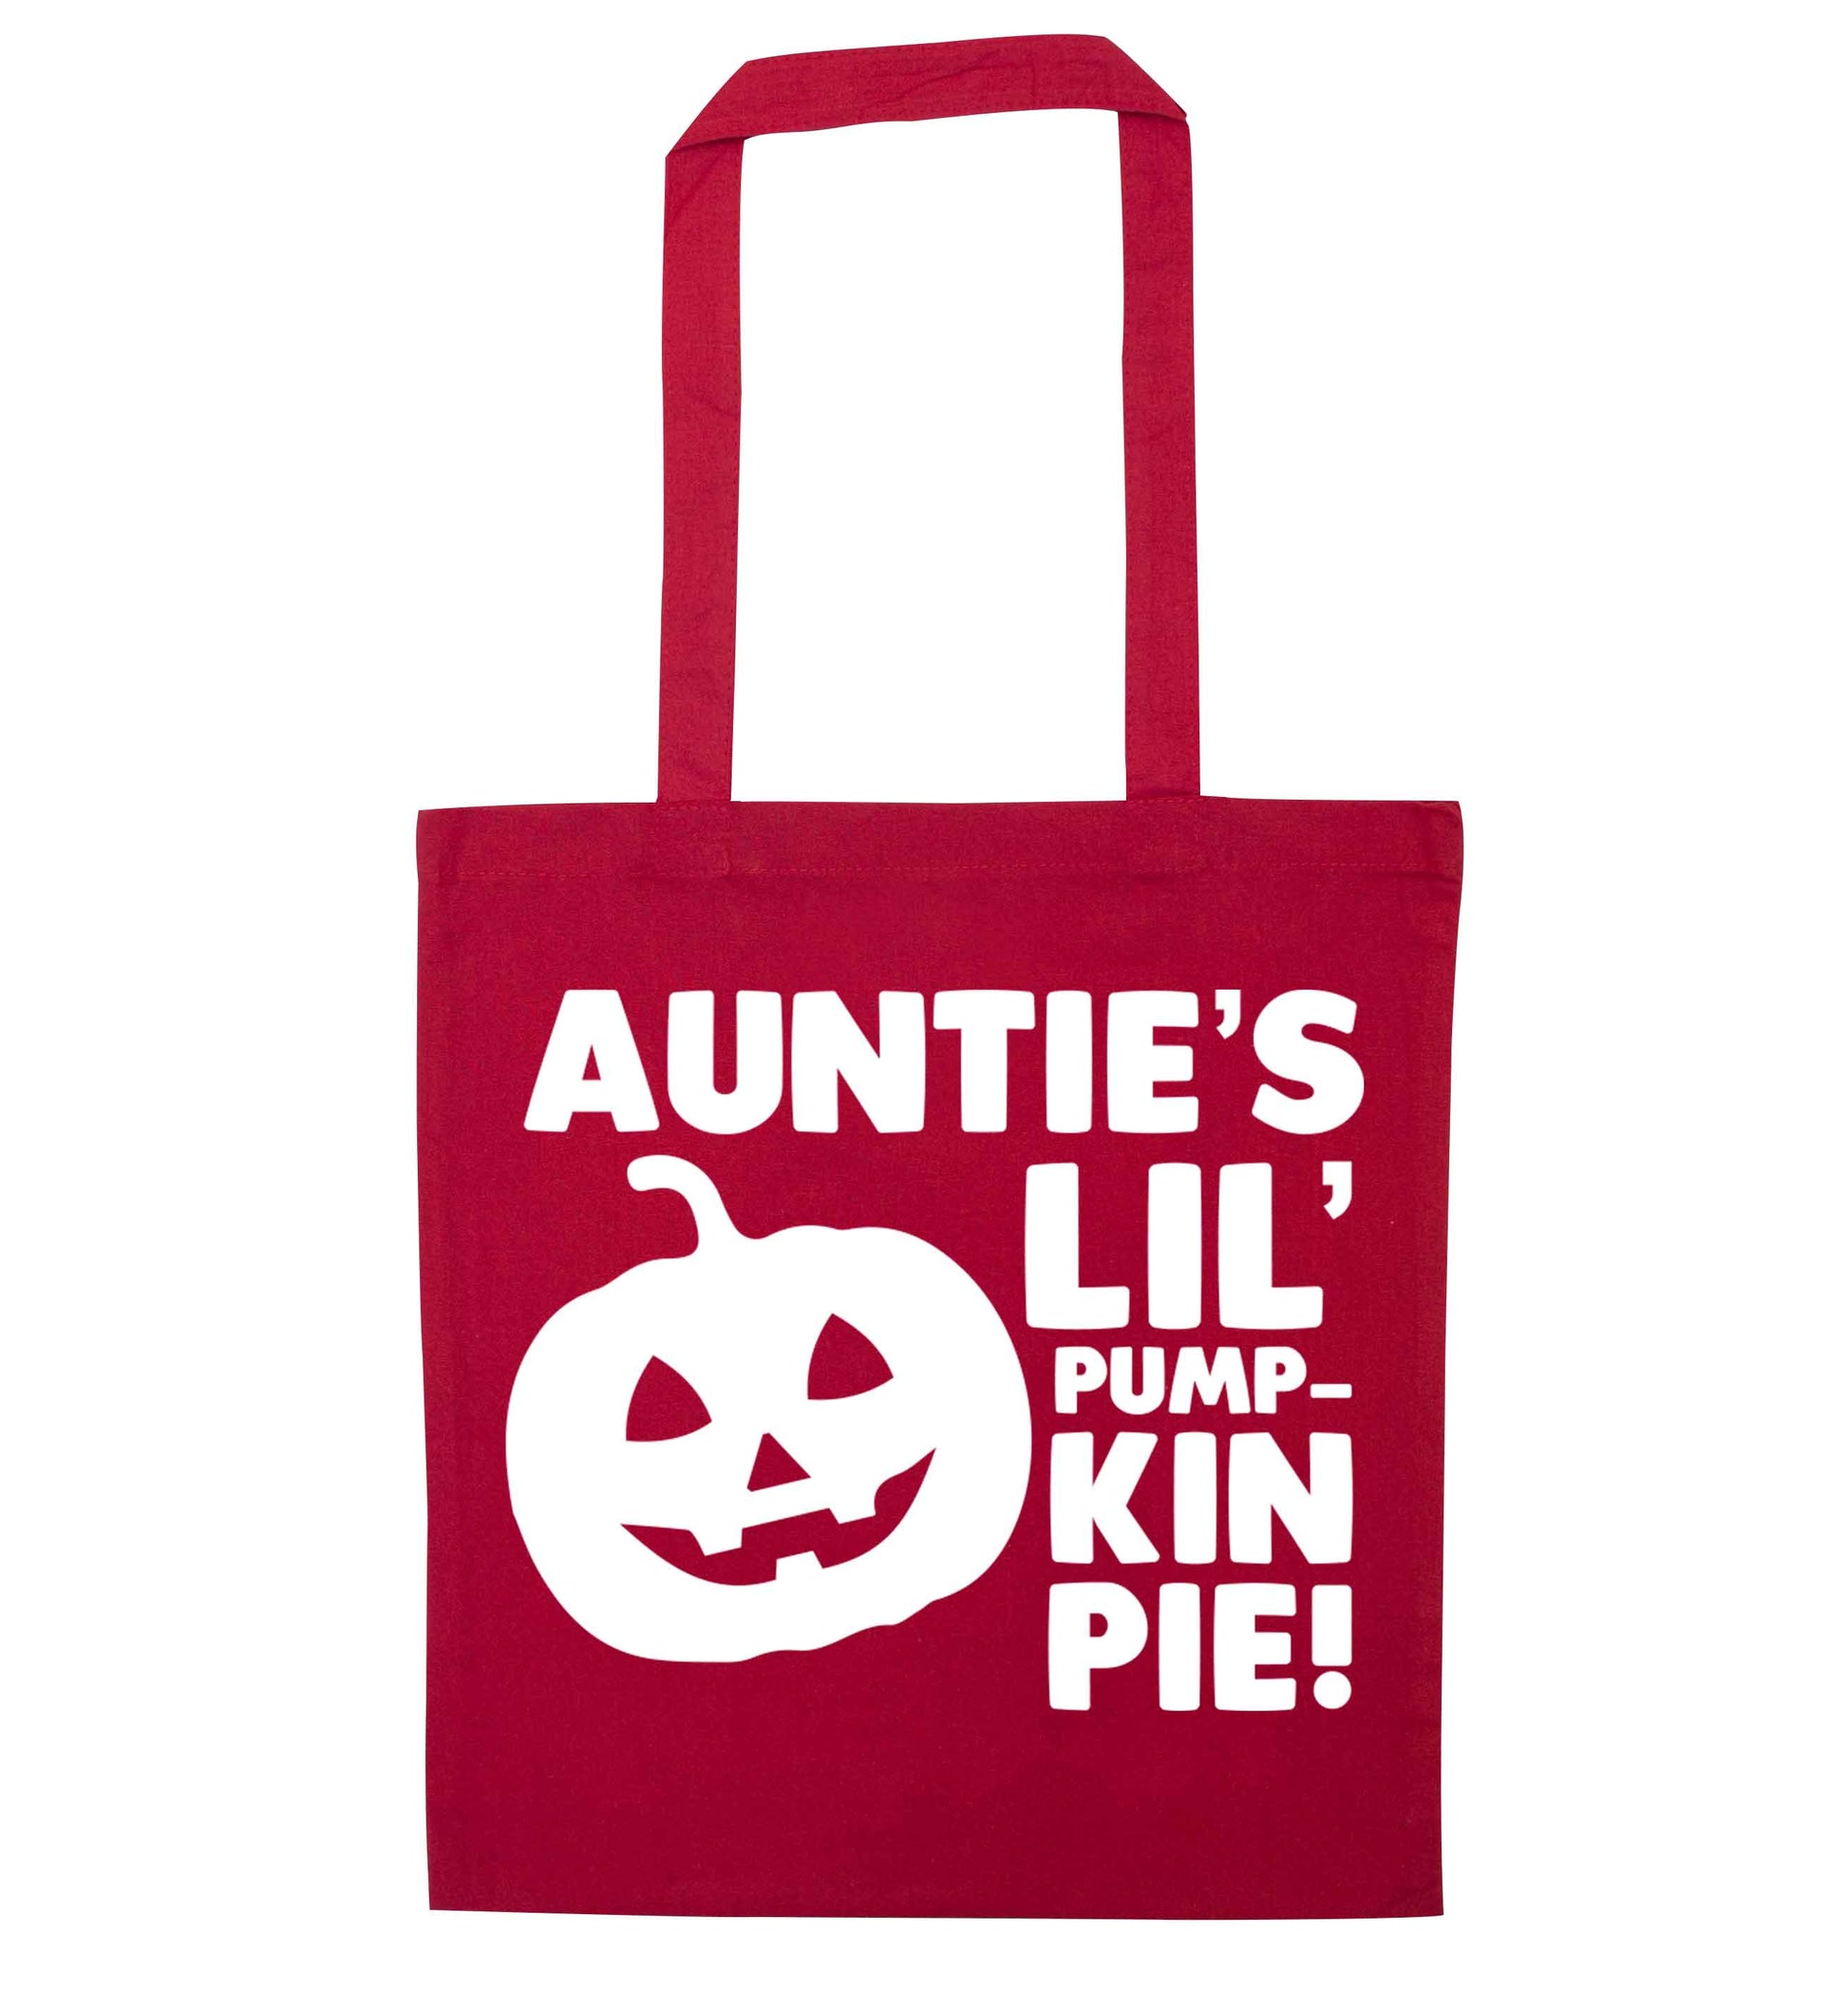 Auntie's lil' pumpkin pie red tote bag